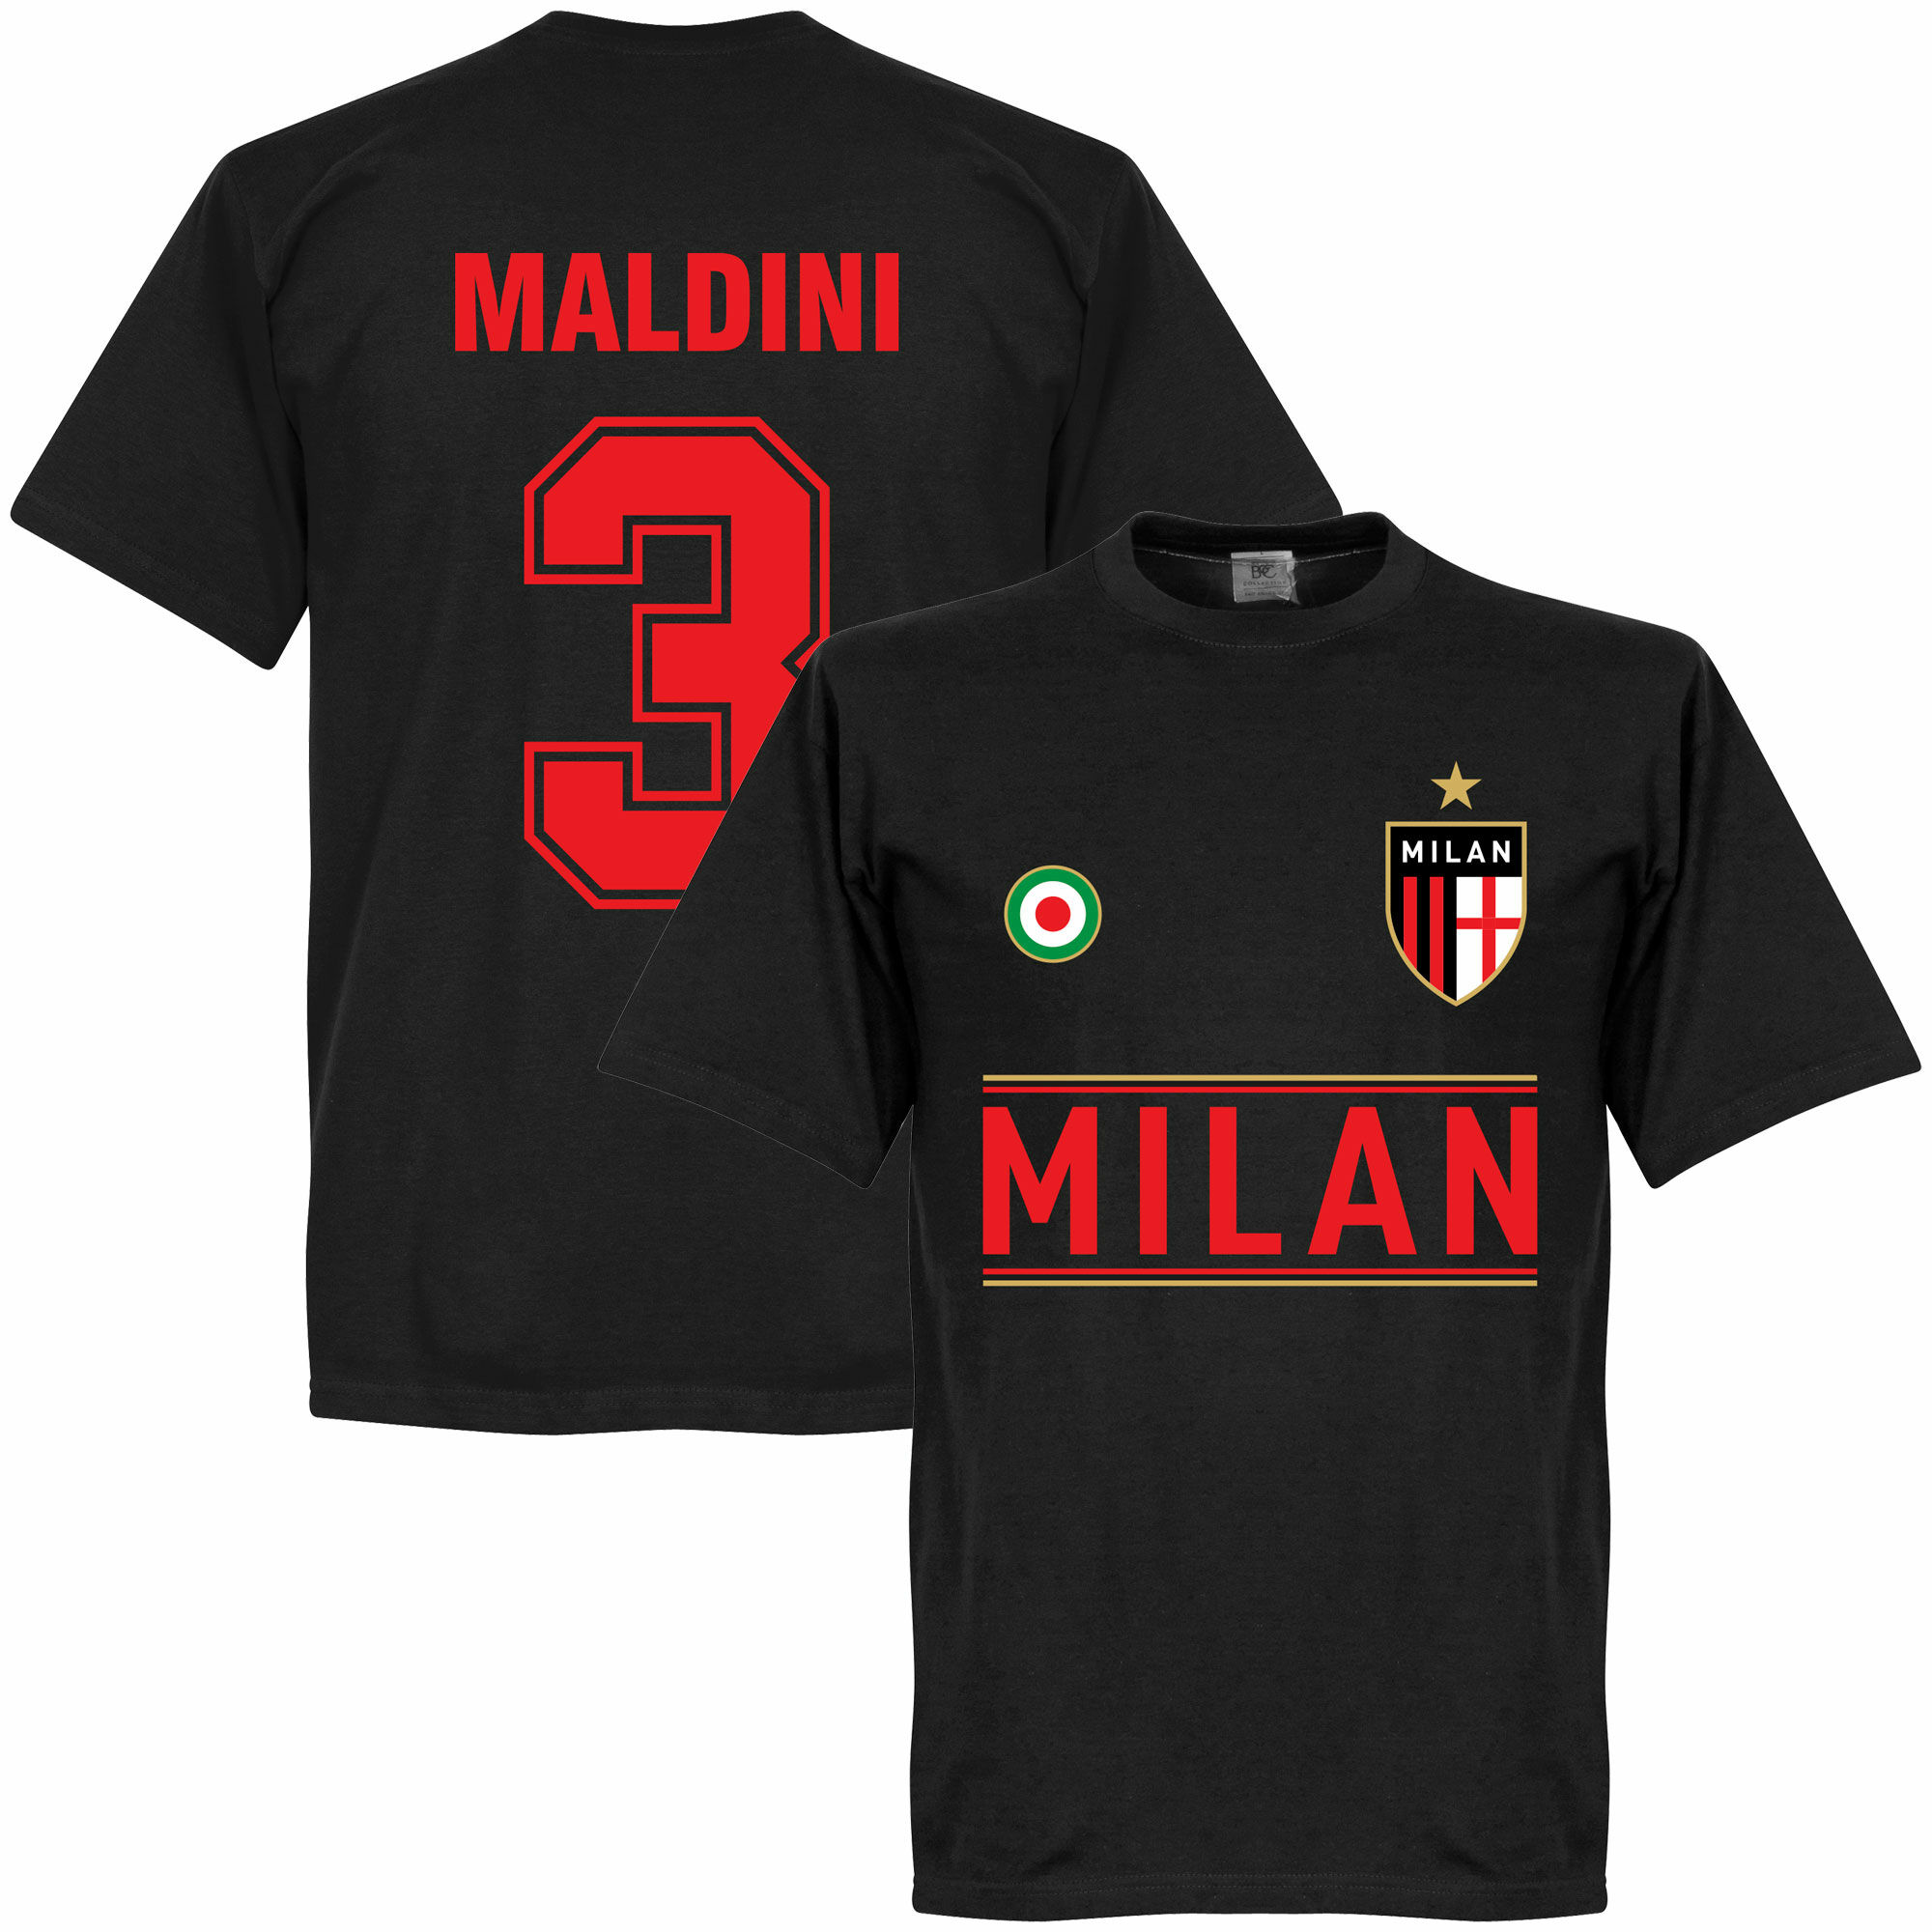 AC Milán - Tričko - Paolo Maldini, číslo 3, černé